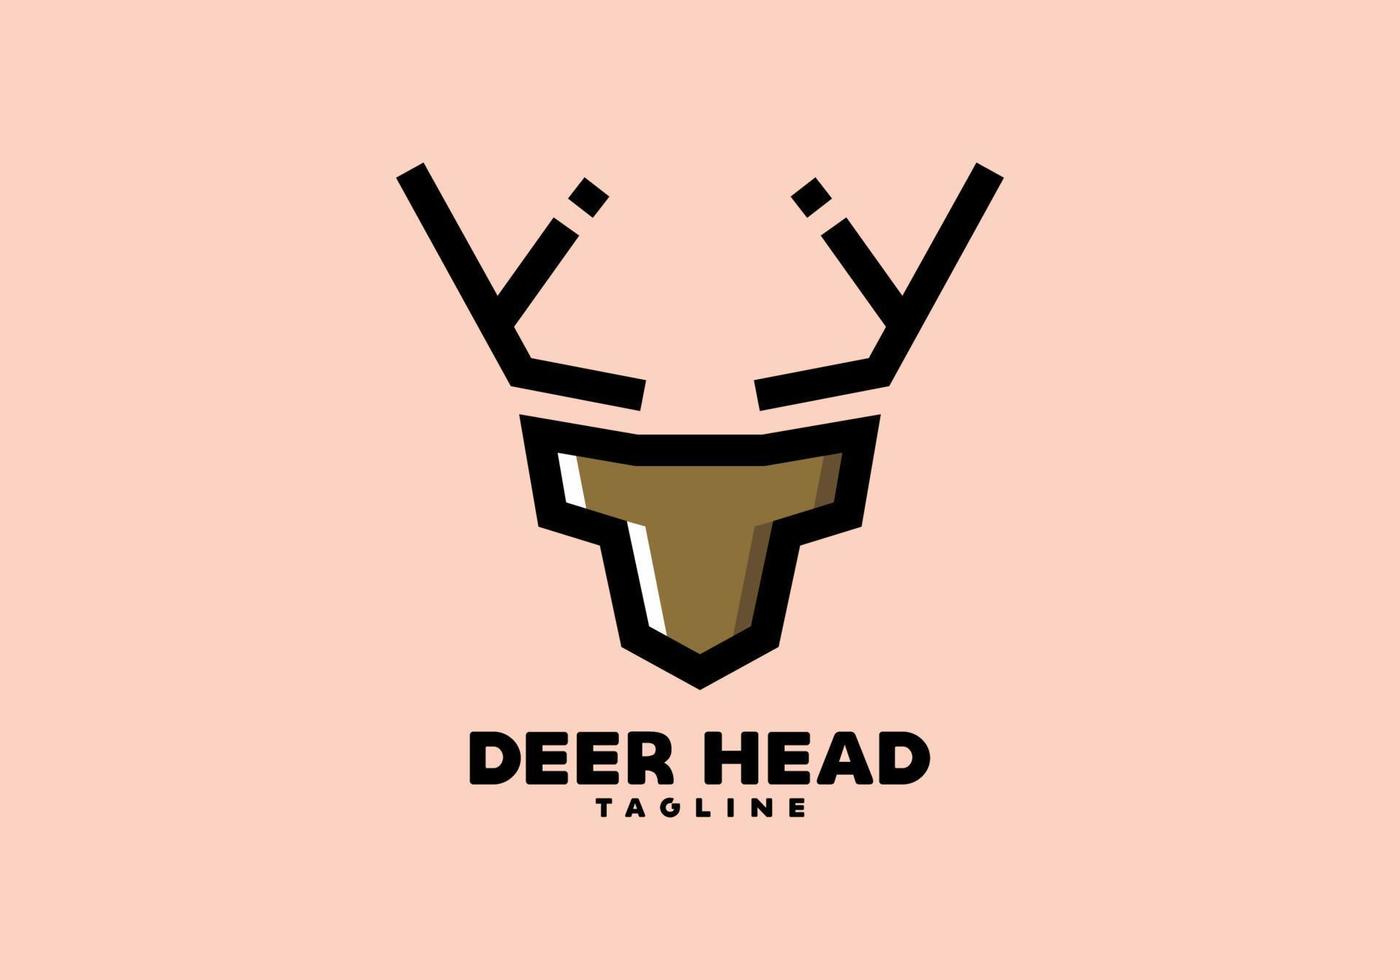 Stiff art style of deer head vector